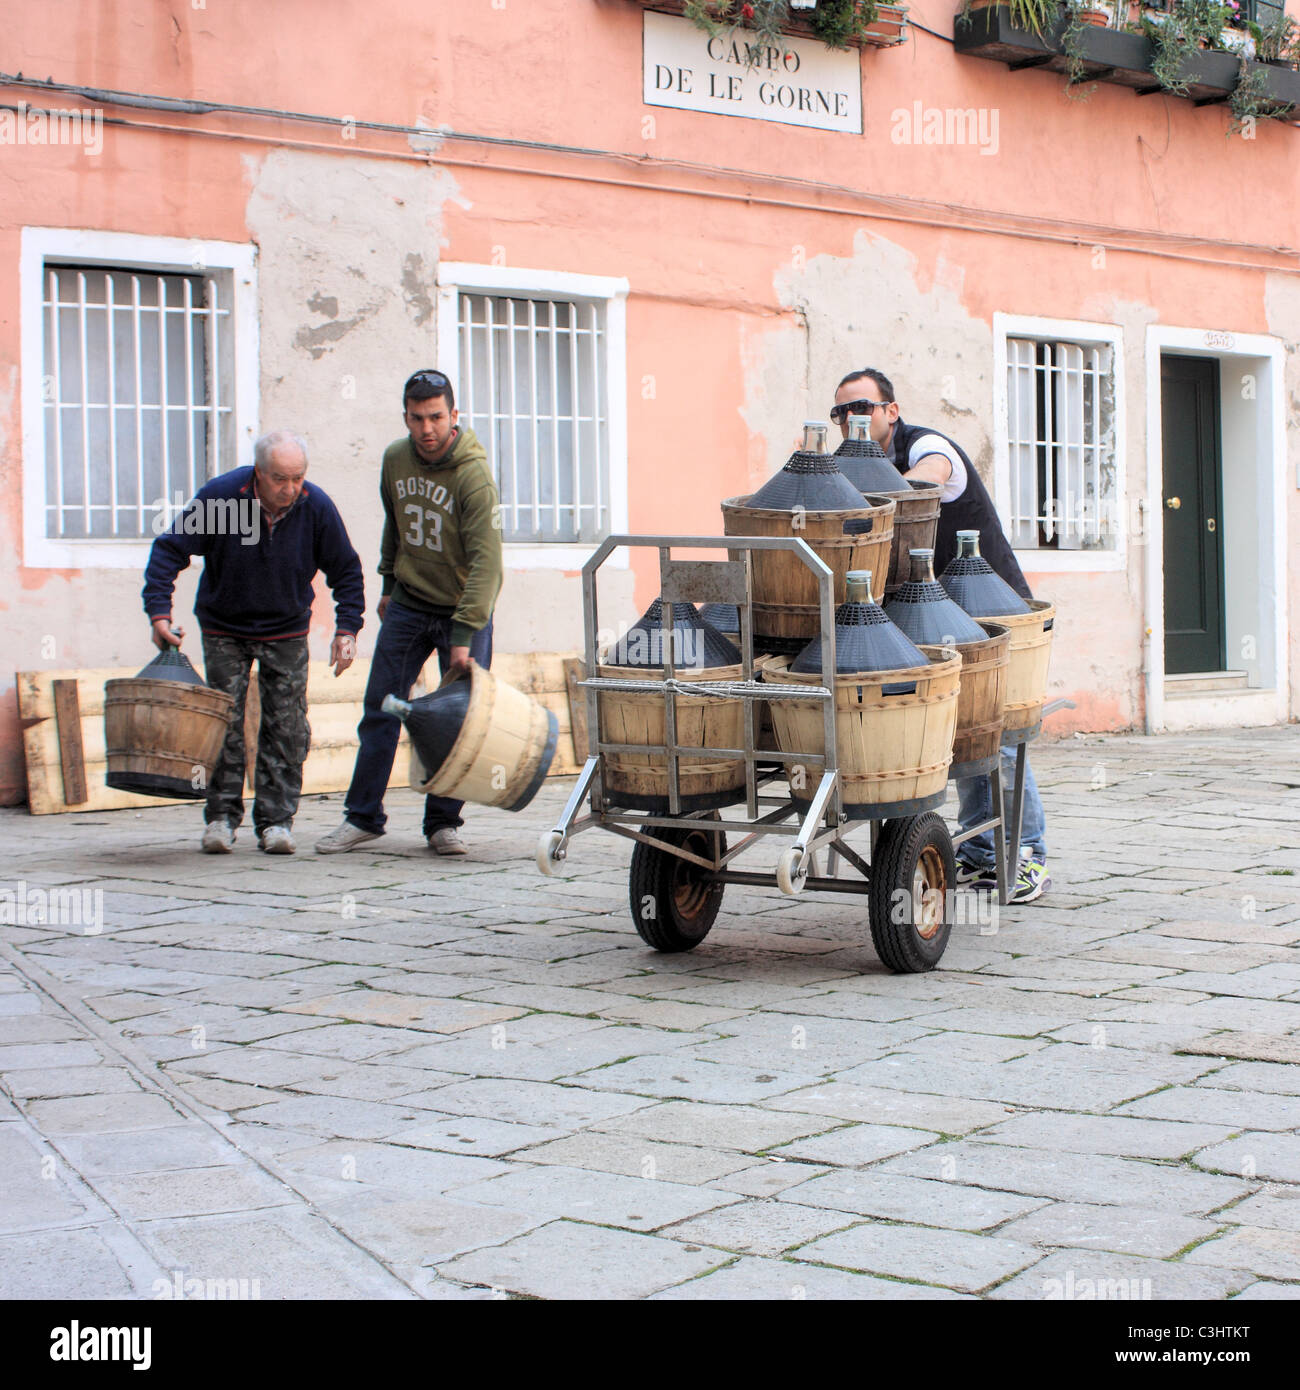 Livraison de vin, le Campo de Gorne, Venise, Italie Banque D'Images